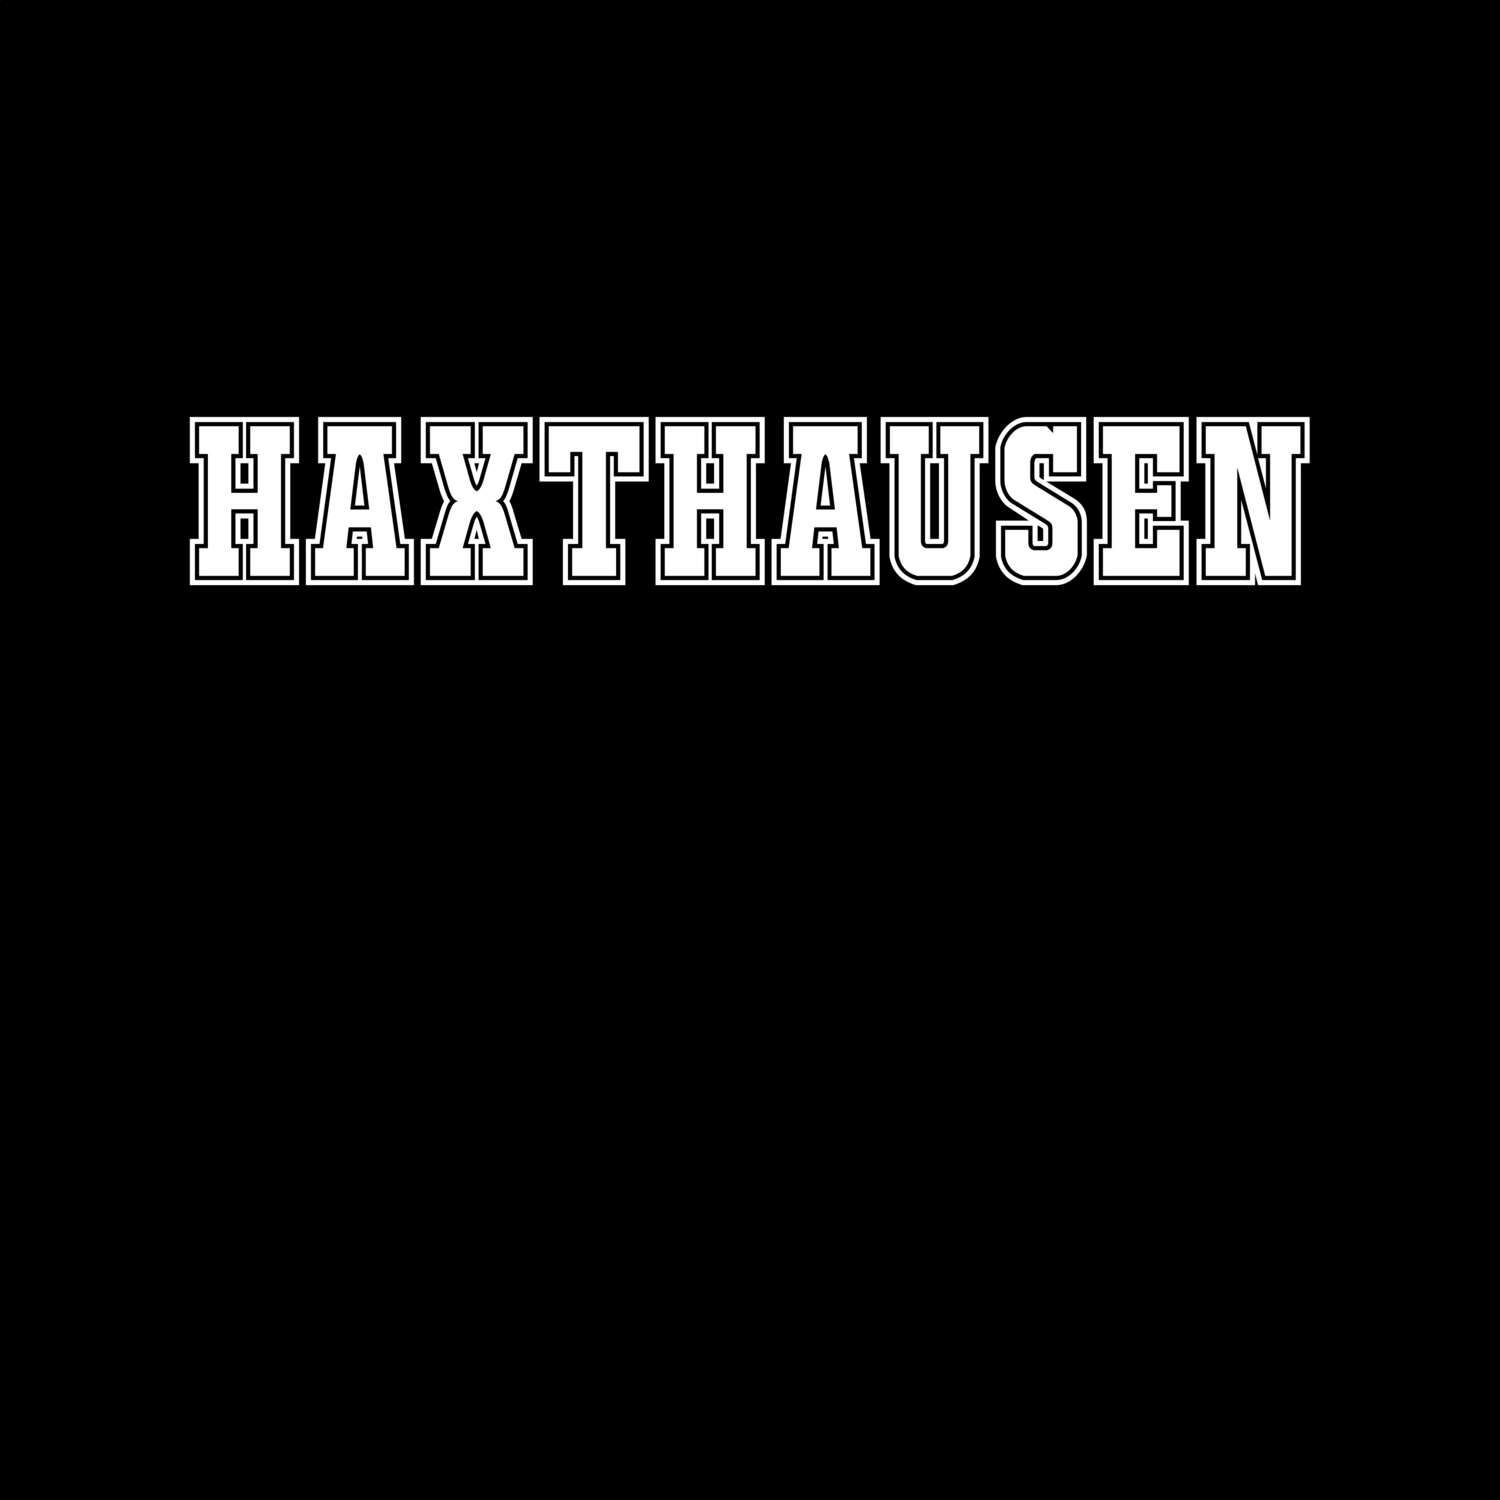 Haxthausen T-Shirt »Classic«